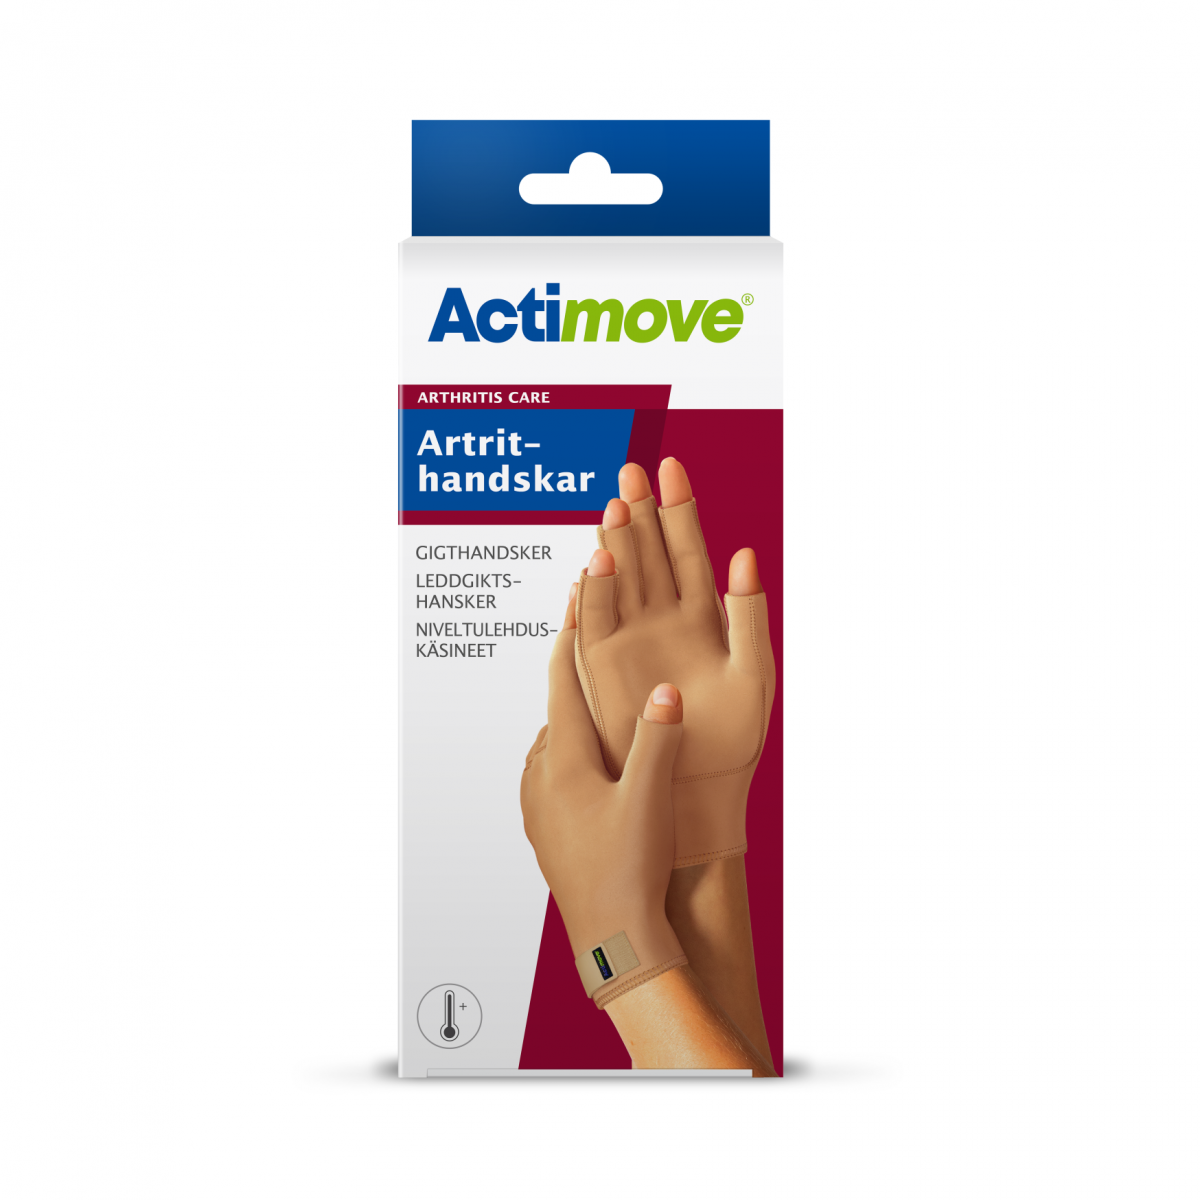 Artrithandskar Actimove arthritis Care - www.gulare.com